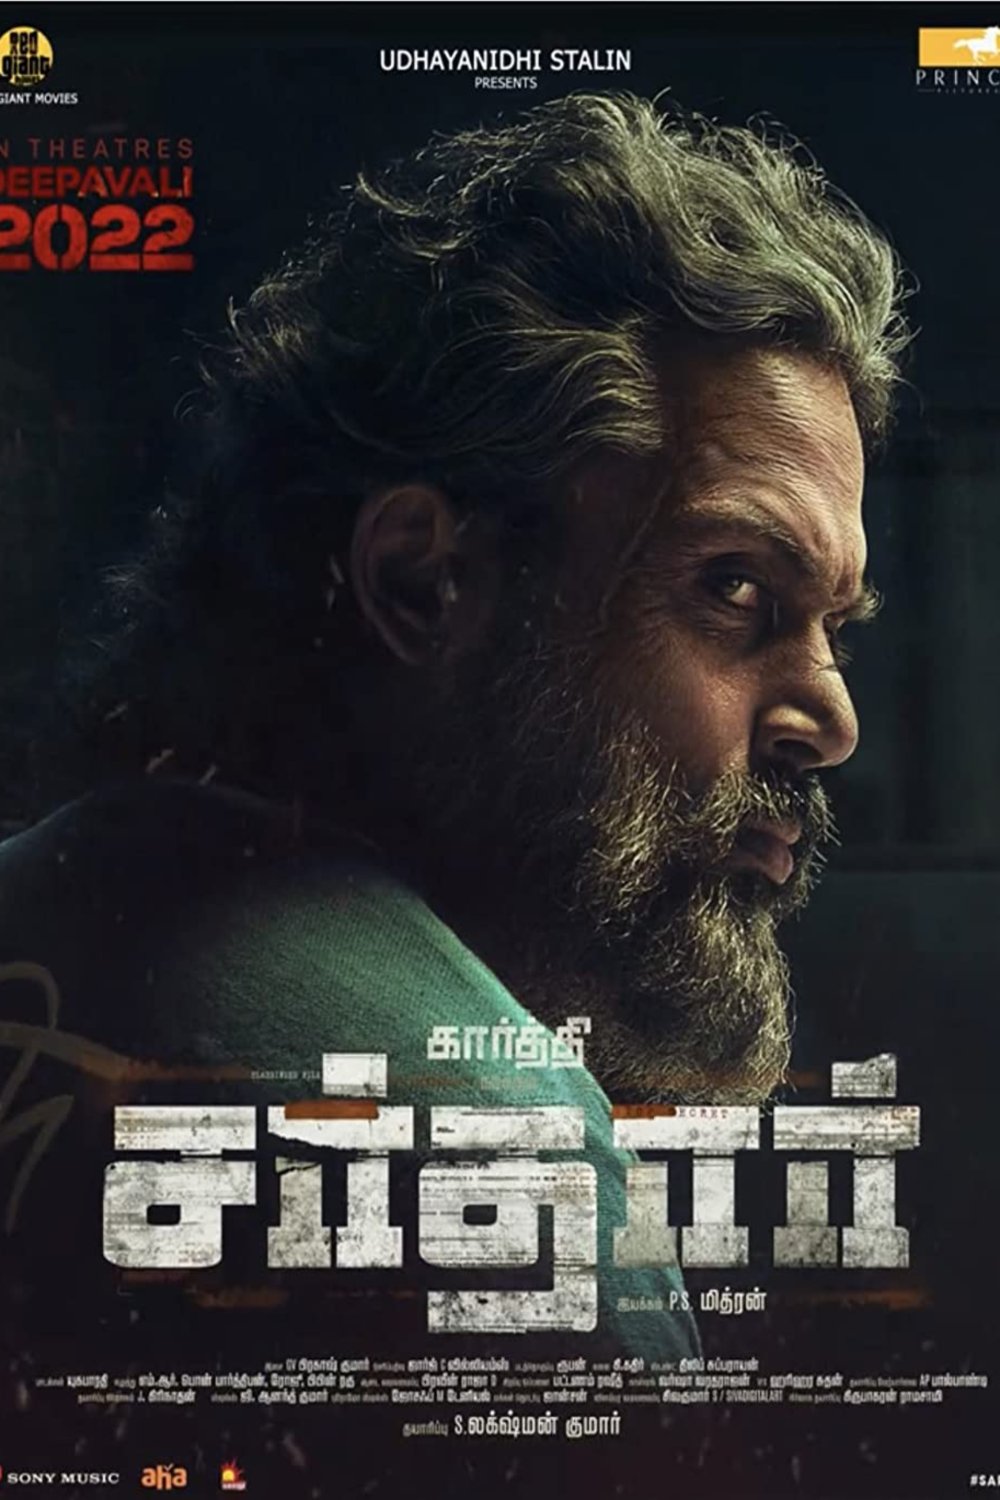 Tamil poster of the movie Sardar